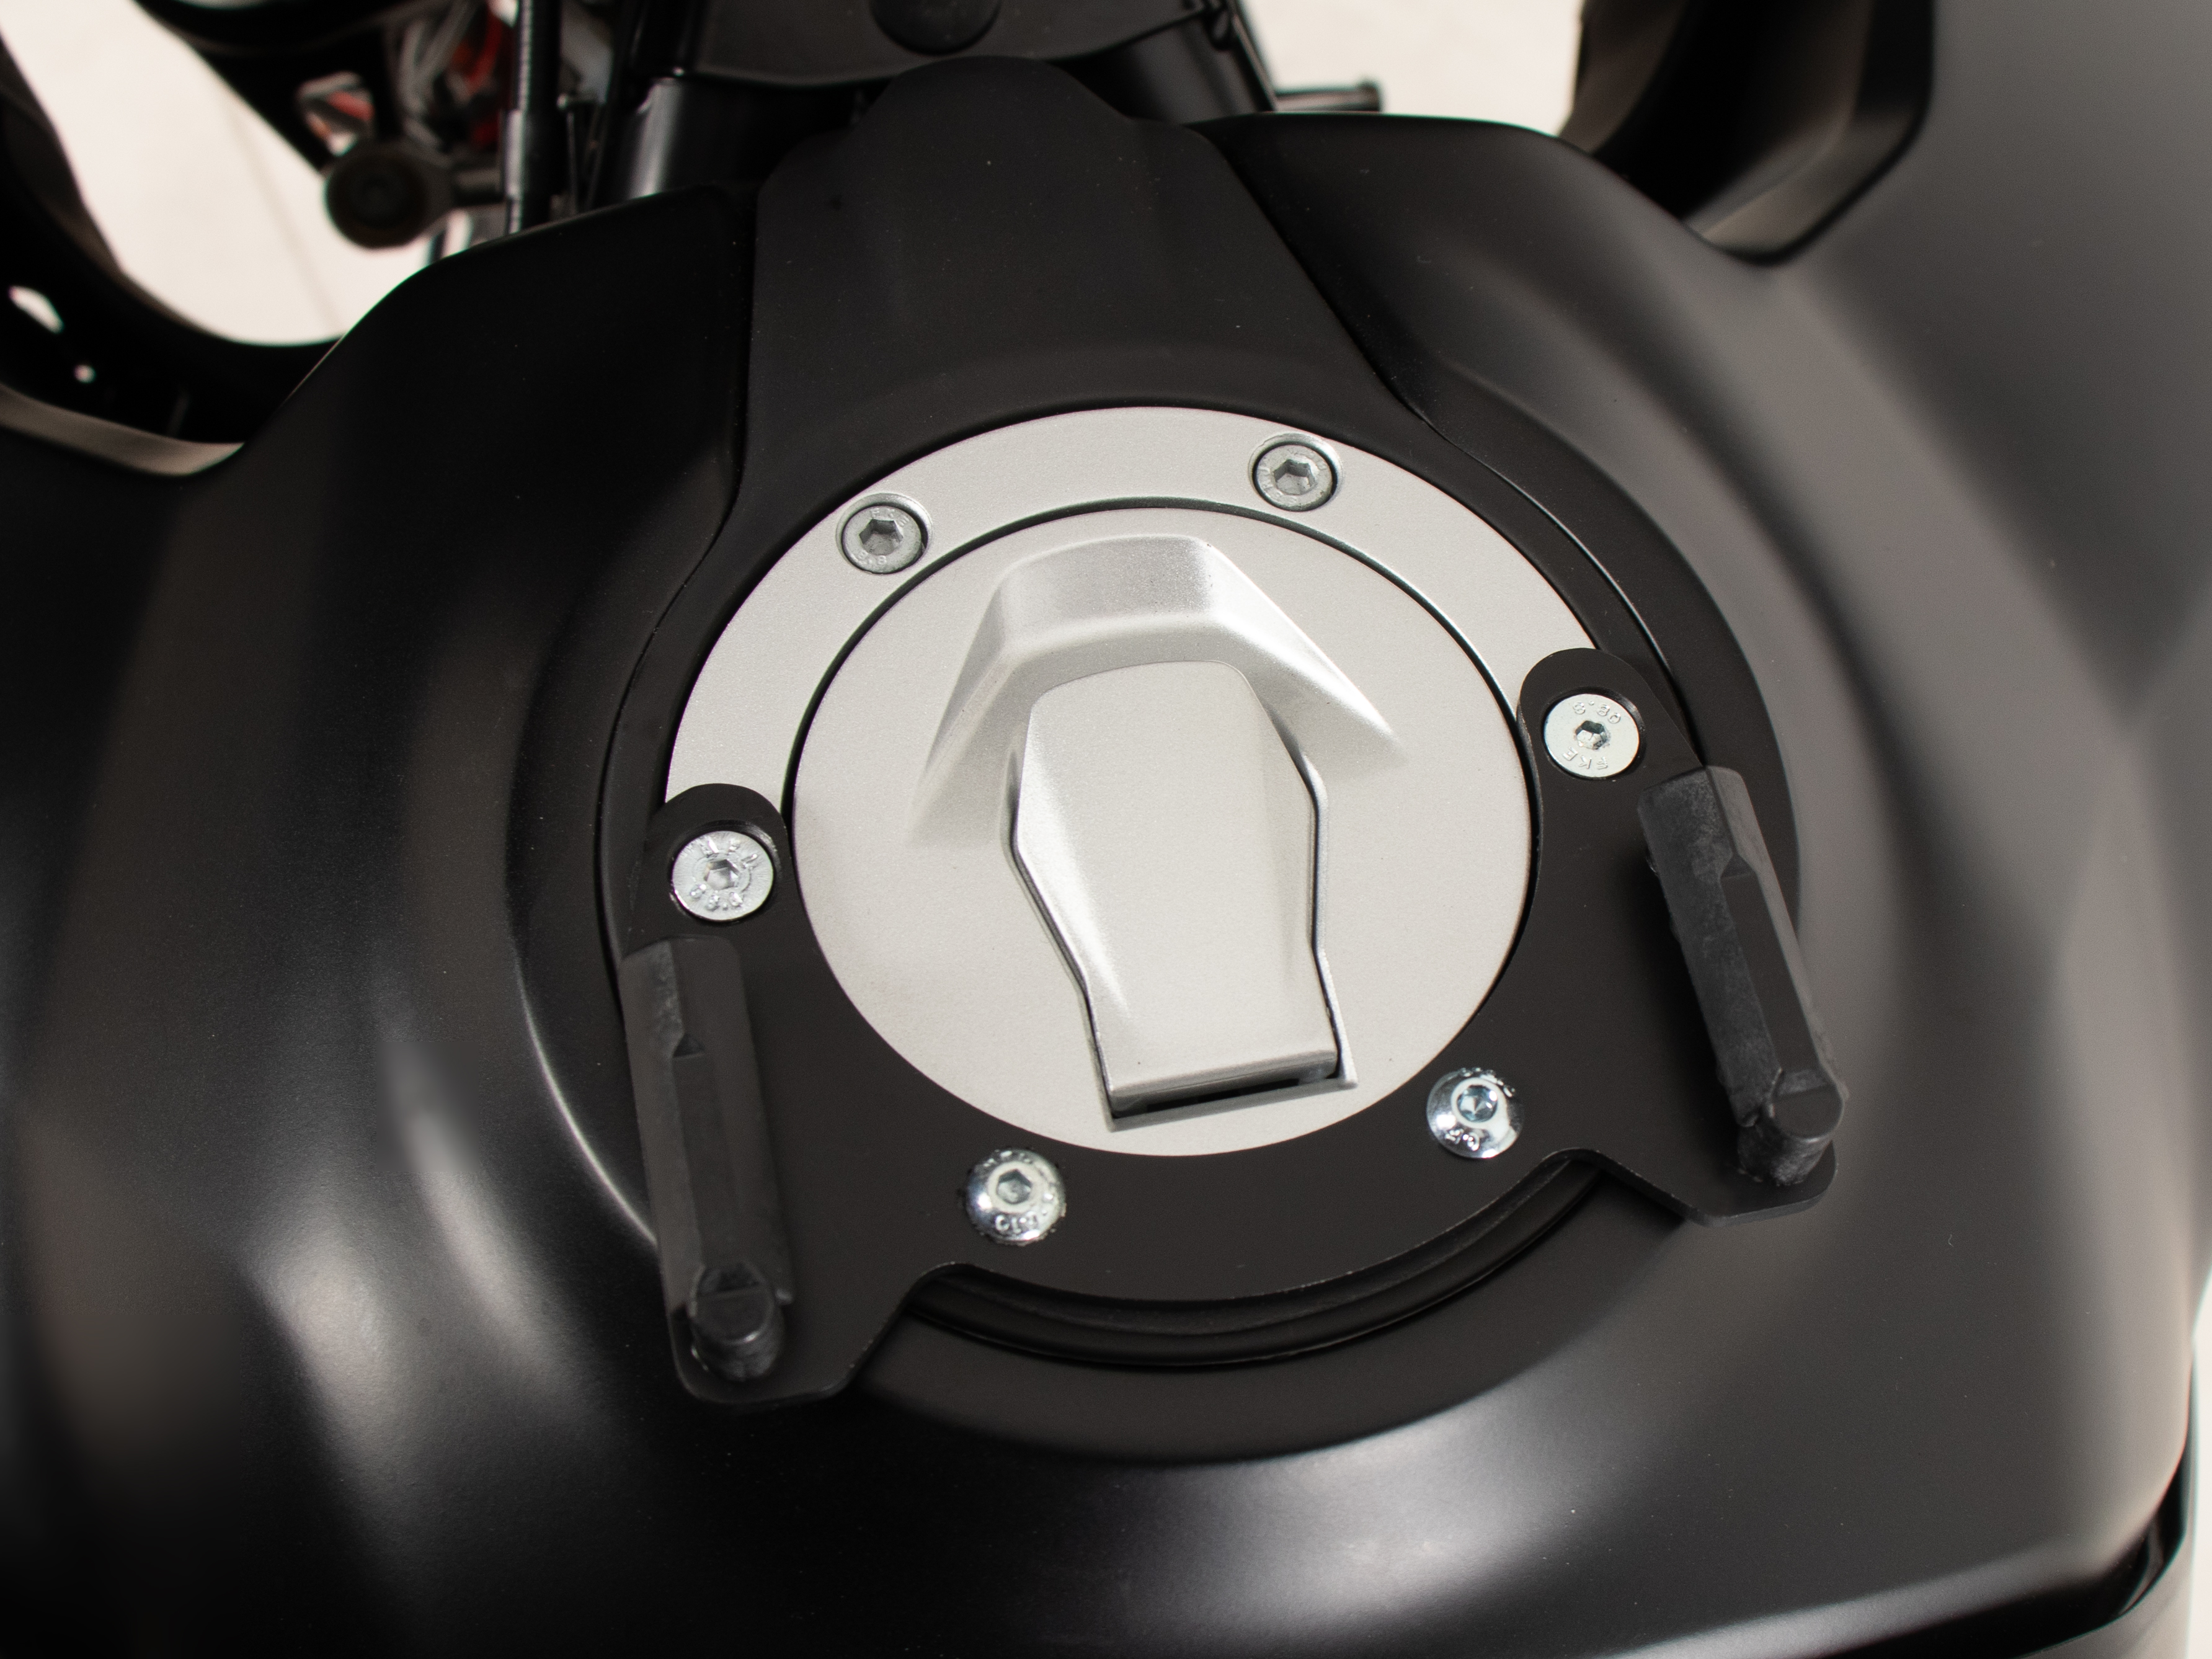 Tankring BASIC incl. fastener for tankbag for KTM 390 Adventure (2020-)